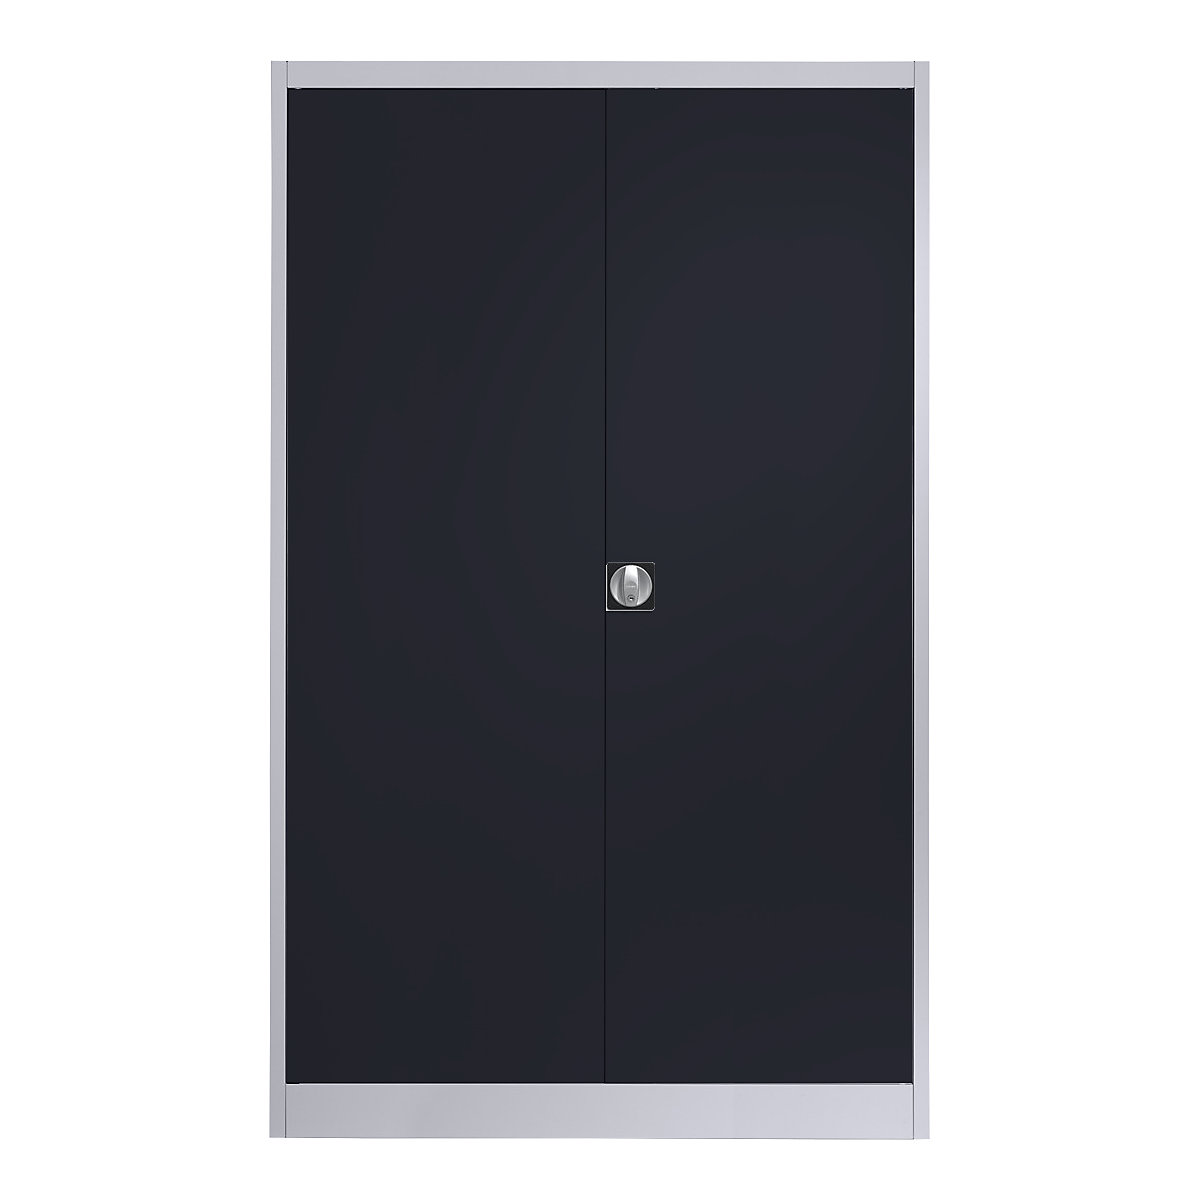 Szafa stalowa z drzwiami skrzydłowymi – mauser, 4 półki, szer. 1200 mm, biały aluminium / antracytowy, gł. zewn. 500 mm